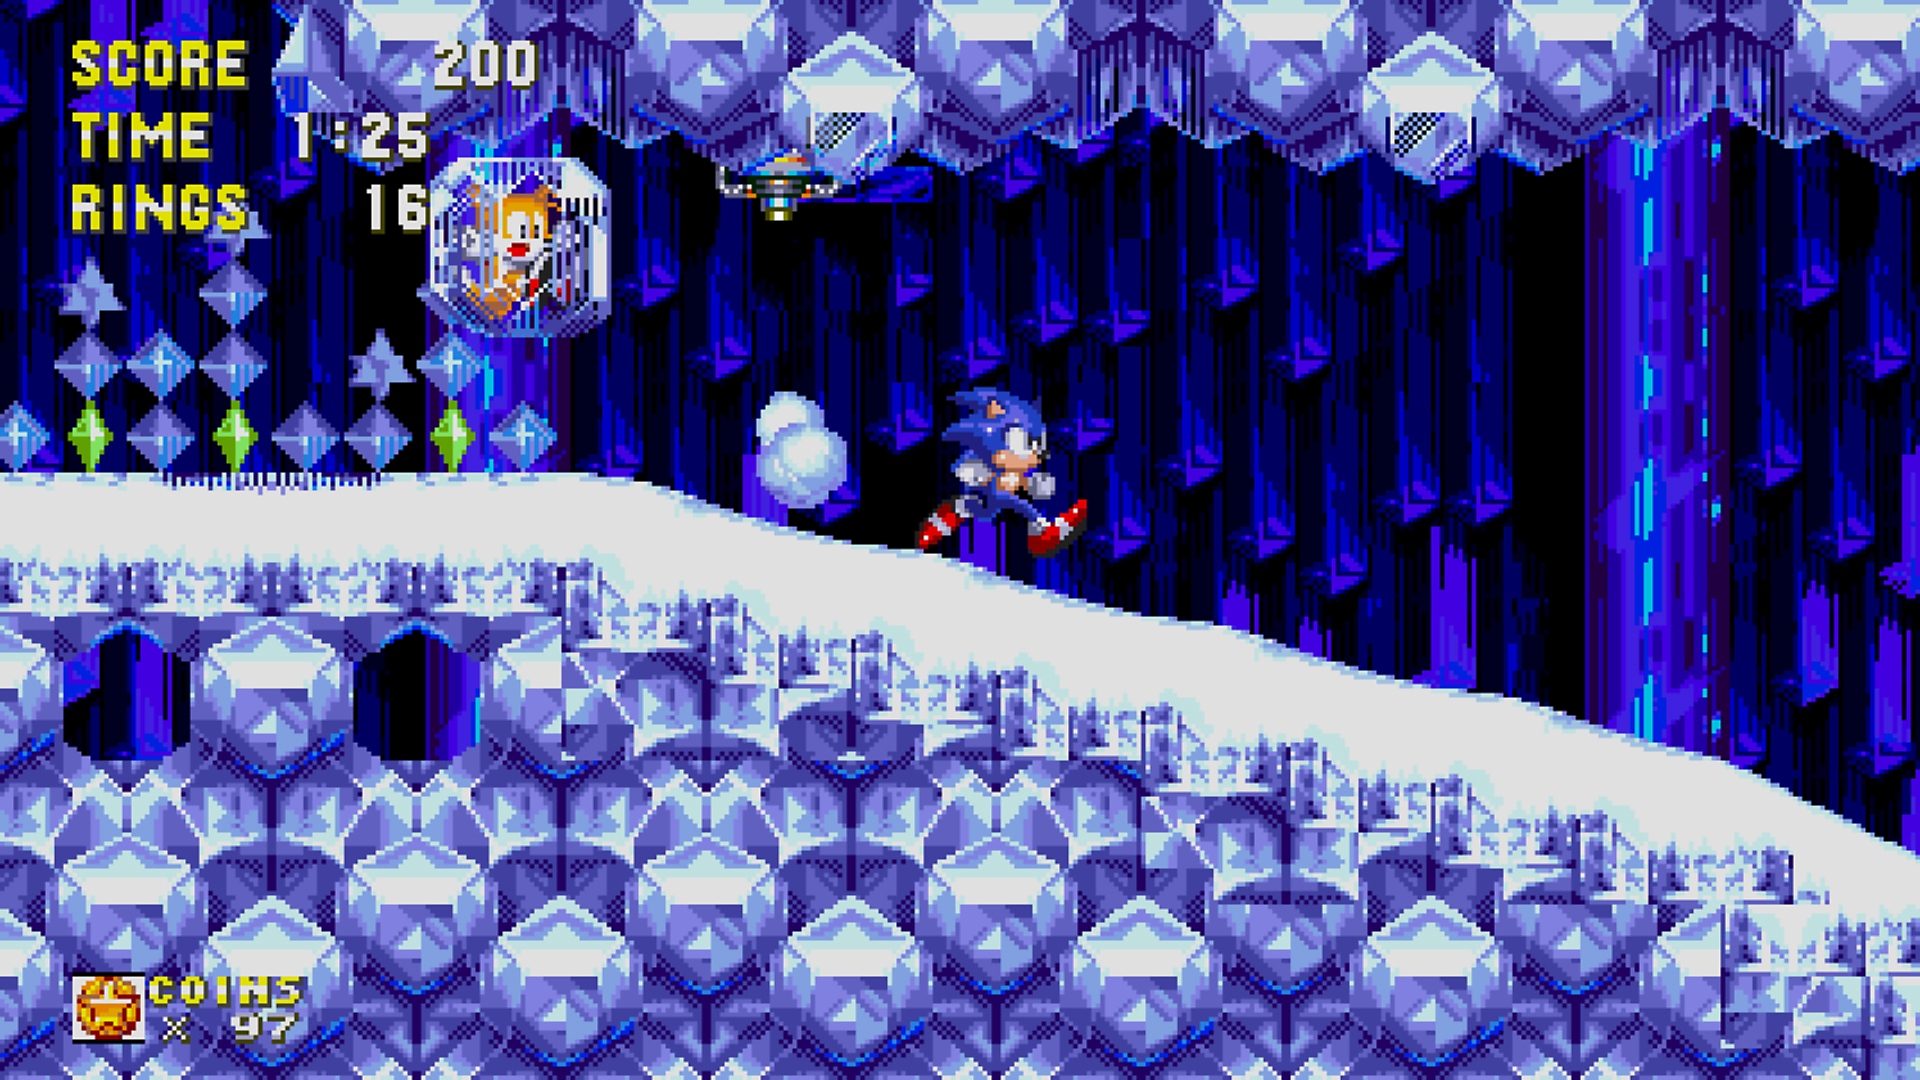 Sonic Origins - Capture d'écran montrant Sonic courant dans un niveau enneigé